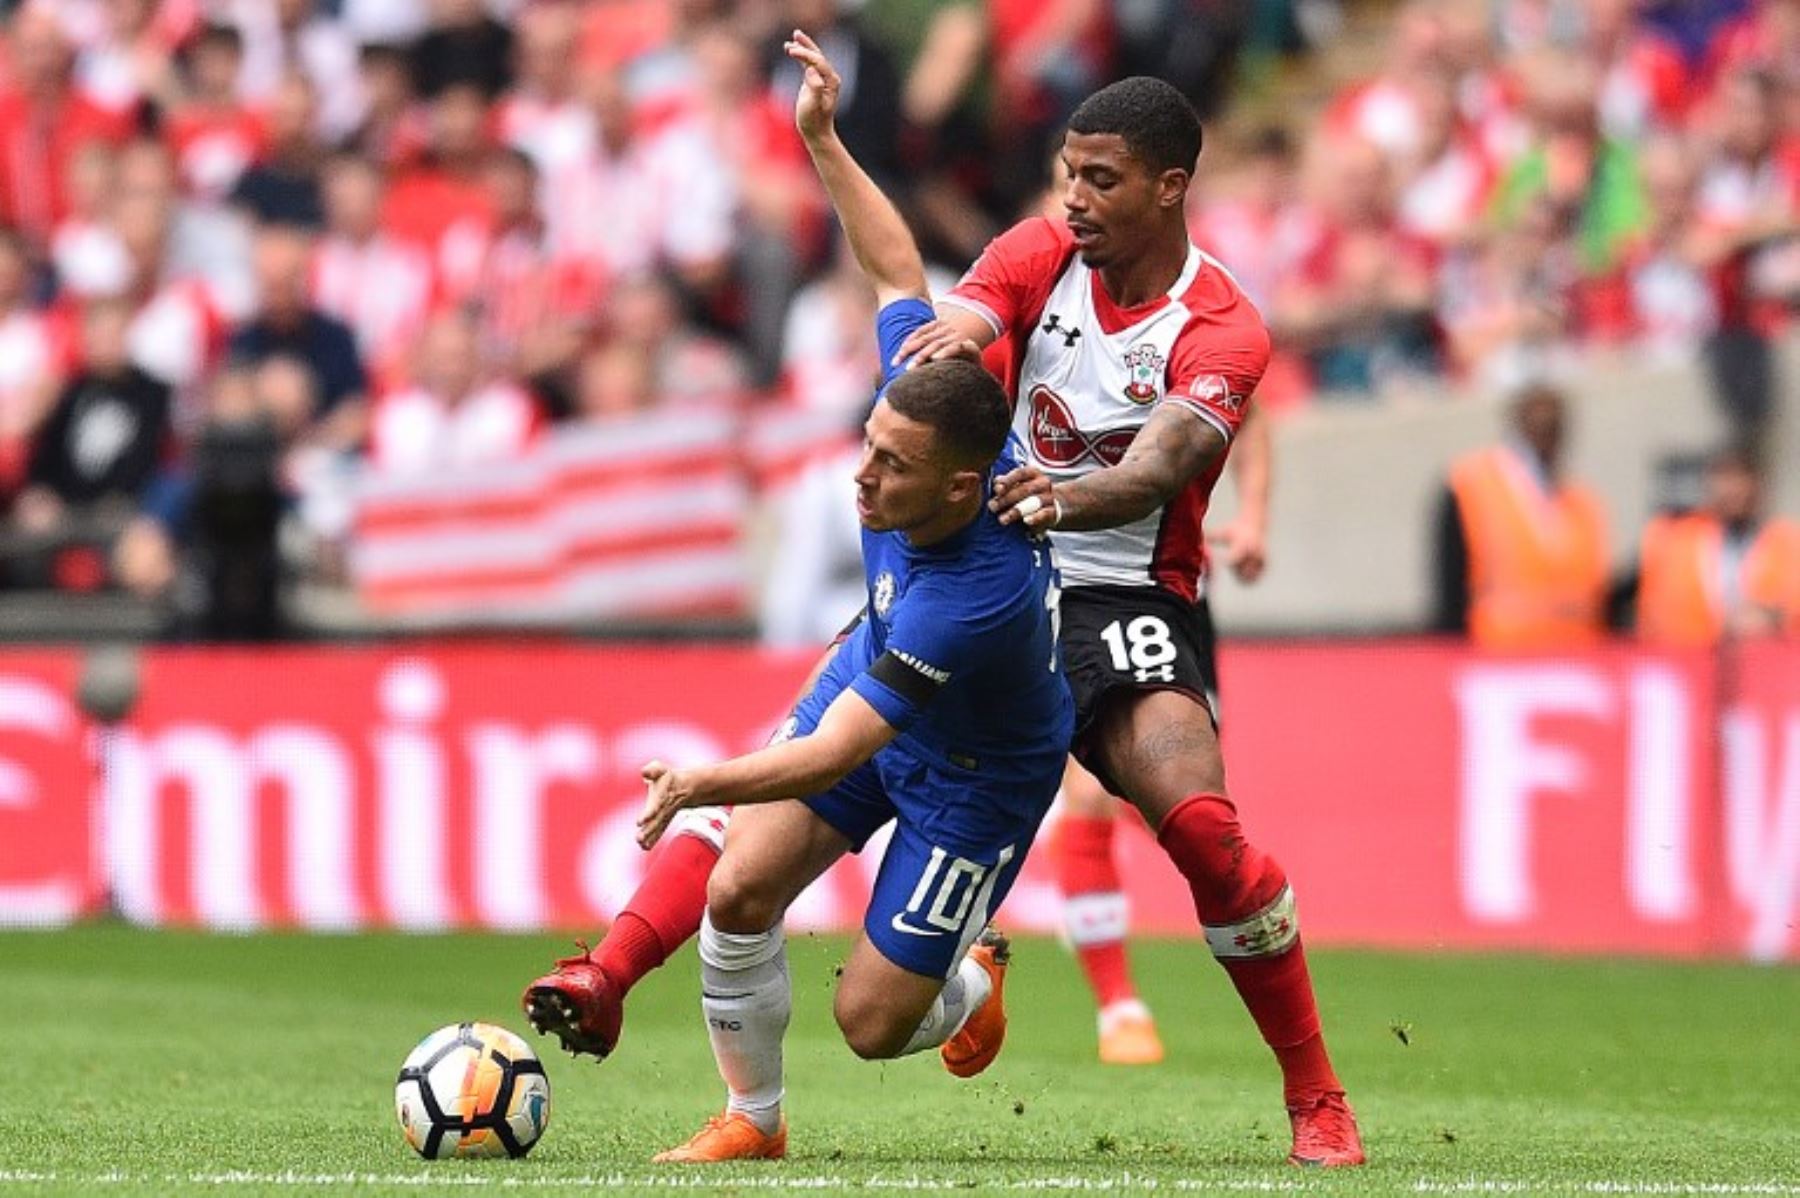 El centrocampista de Southampton Mario Lemina le comete una falta al centrocampista belga Eden Hazard durante el partido de fútbol de la semifinal inglesa FA Cup entre Chelsea y Southampton.Foto:AFP